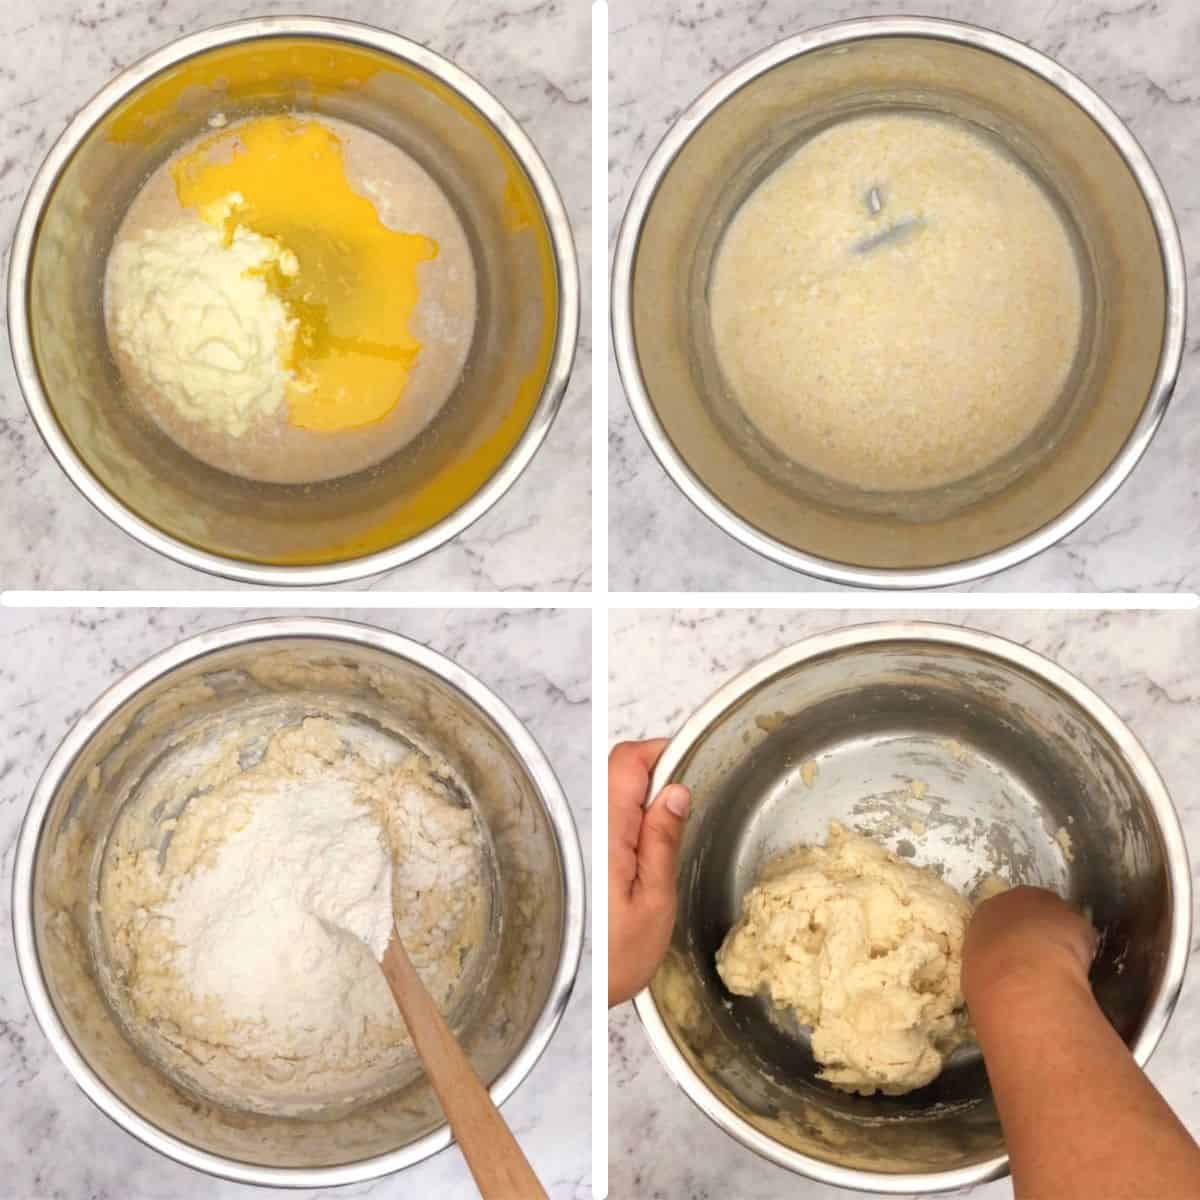 make the dough.